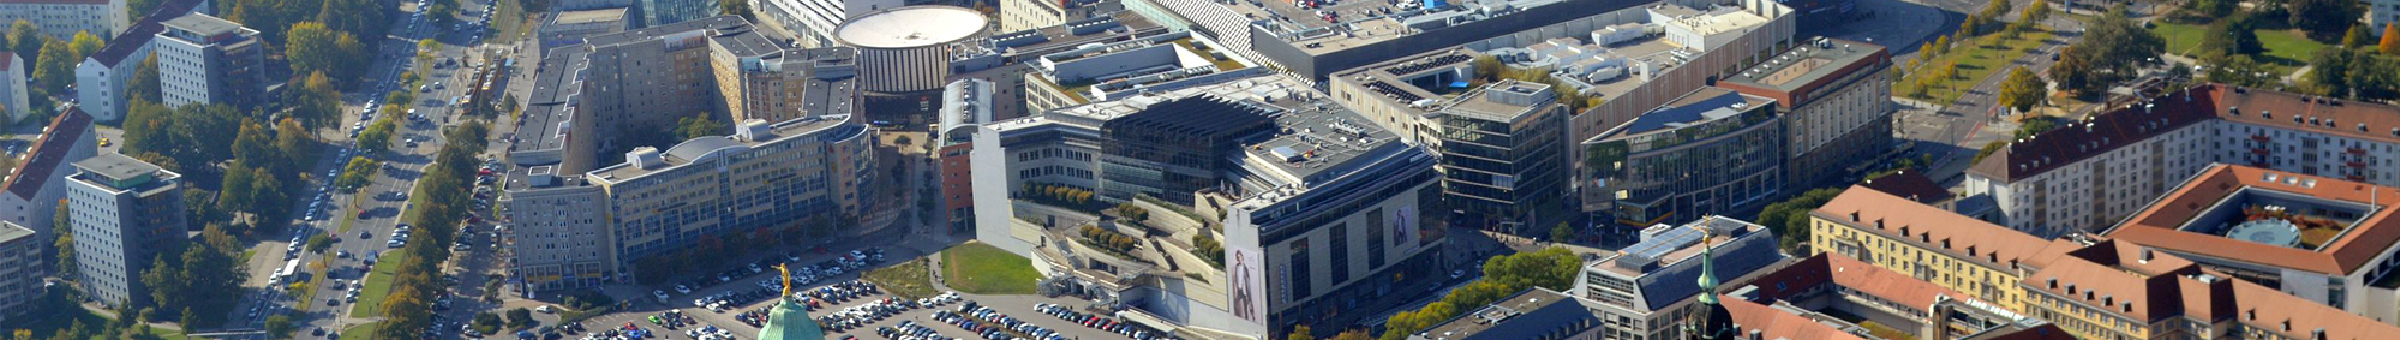 Luftbild des Dresdner Stadtzentrums